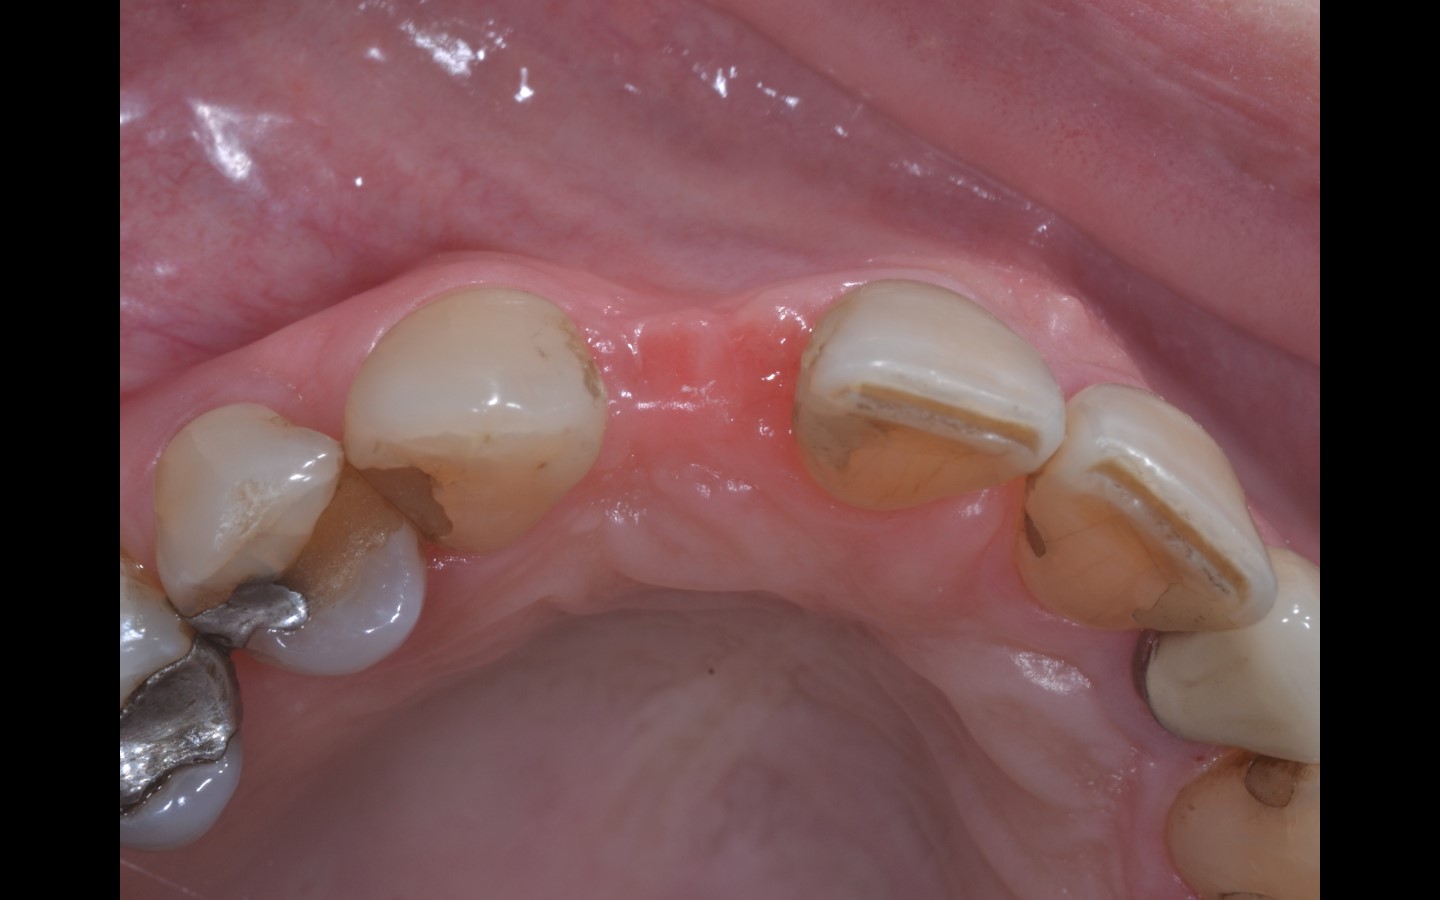 image4 - Reabilitação dento-alveolar com implante Arcsys, enxerto conjuntivo e substituto ósseo Nanosynt